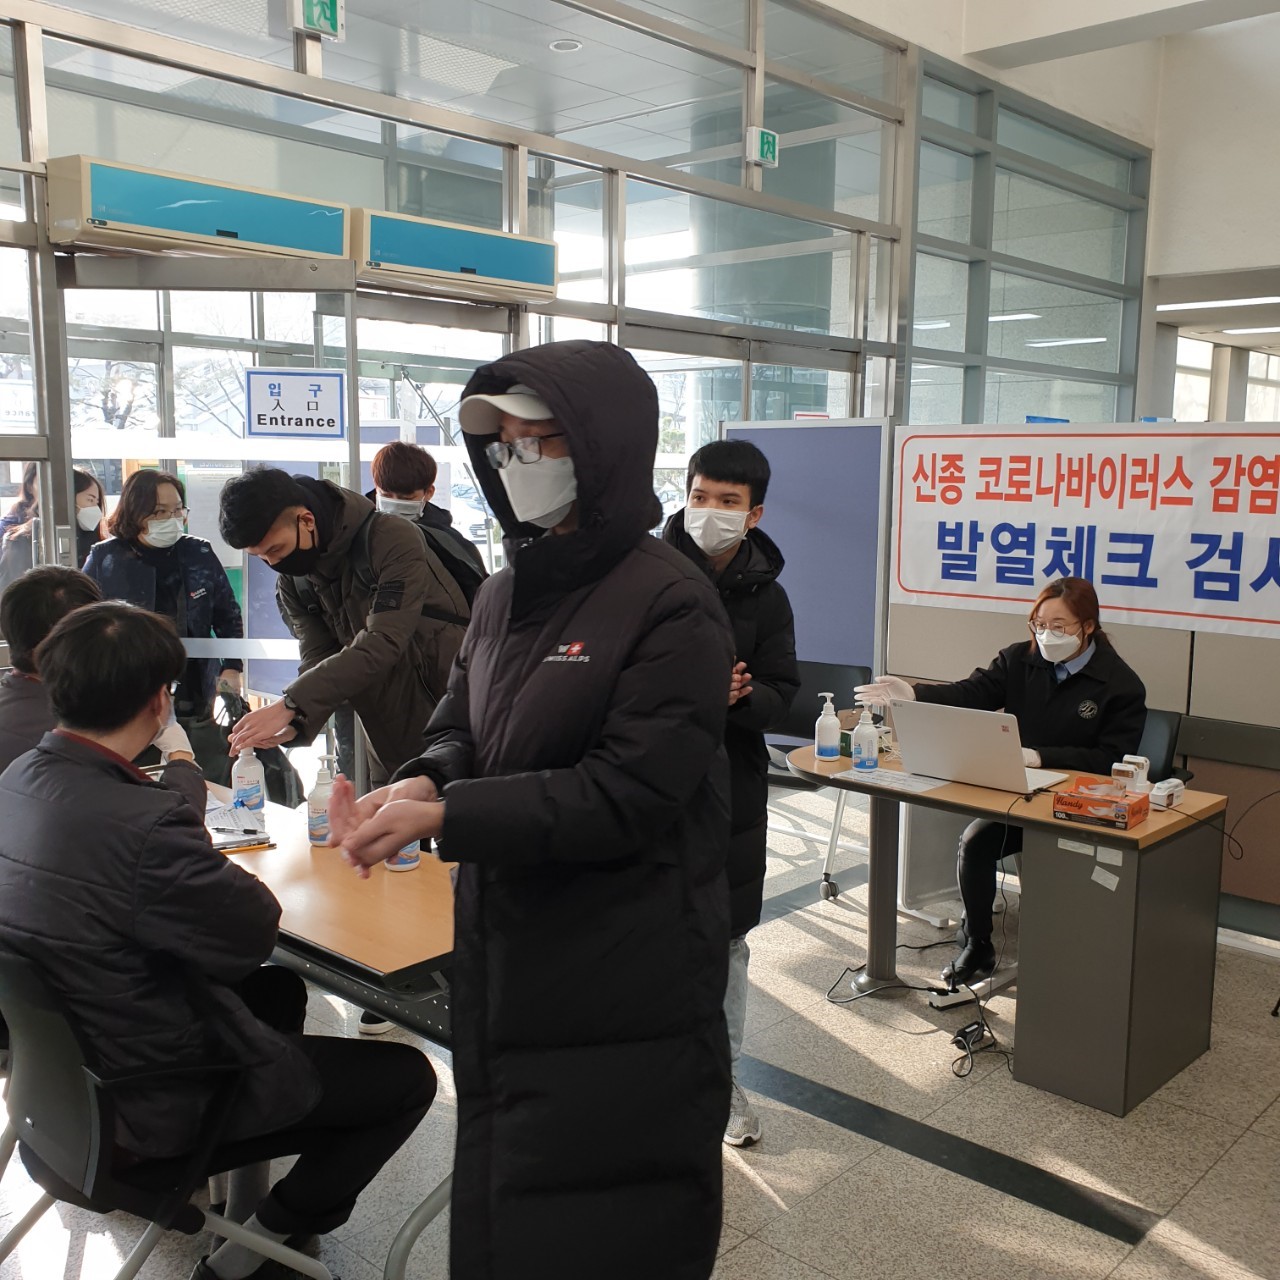 2019학년도 한국어정규과정 겨울학기 신입생 외국인등록증 발급(지문등록)